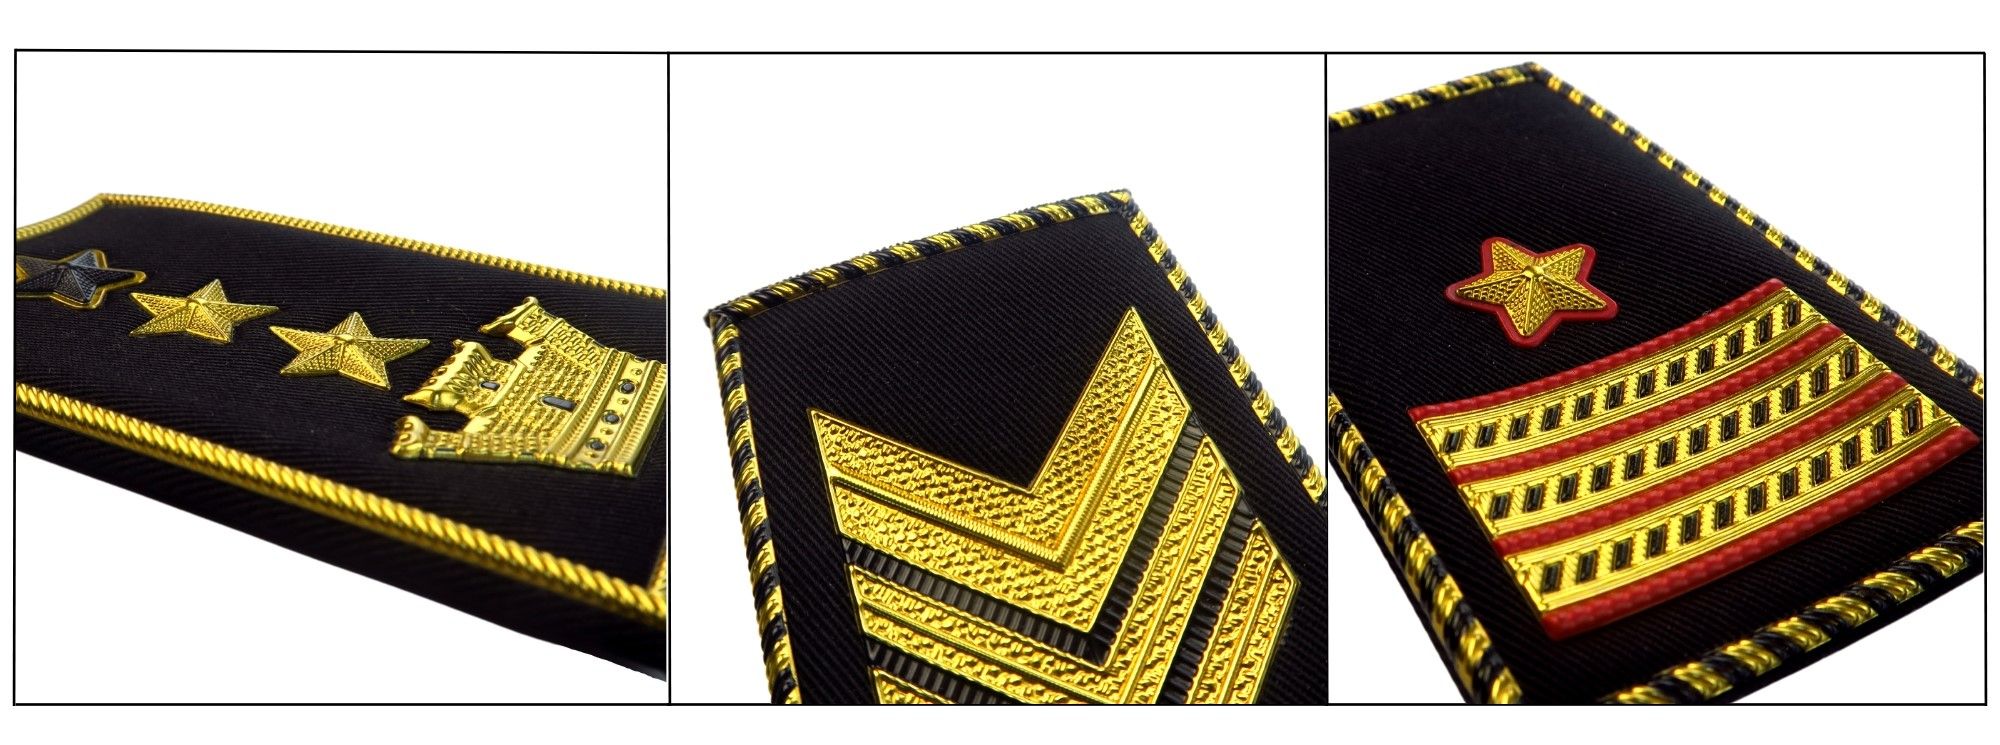 リーダーシップを象徴し、船長のエポーレットで海軍指揮を特注します。